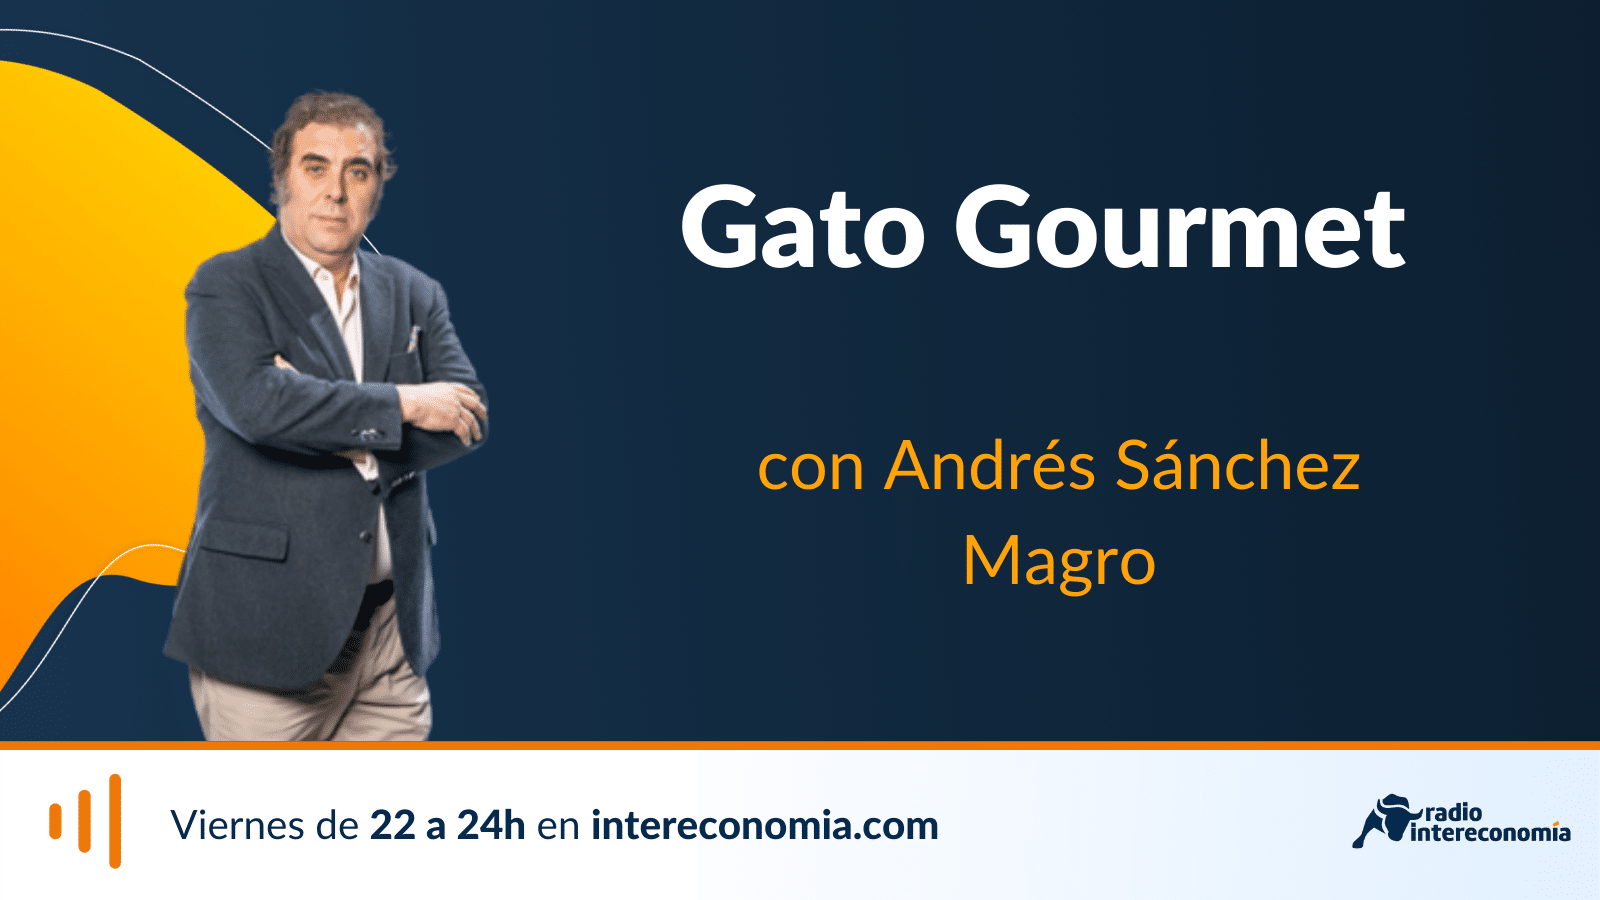 Gato Gourmet, Grupo Marqués de Atrio 01/07/2022